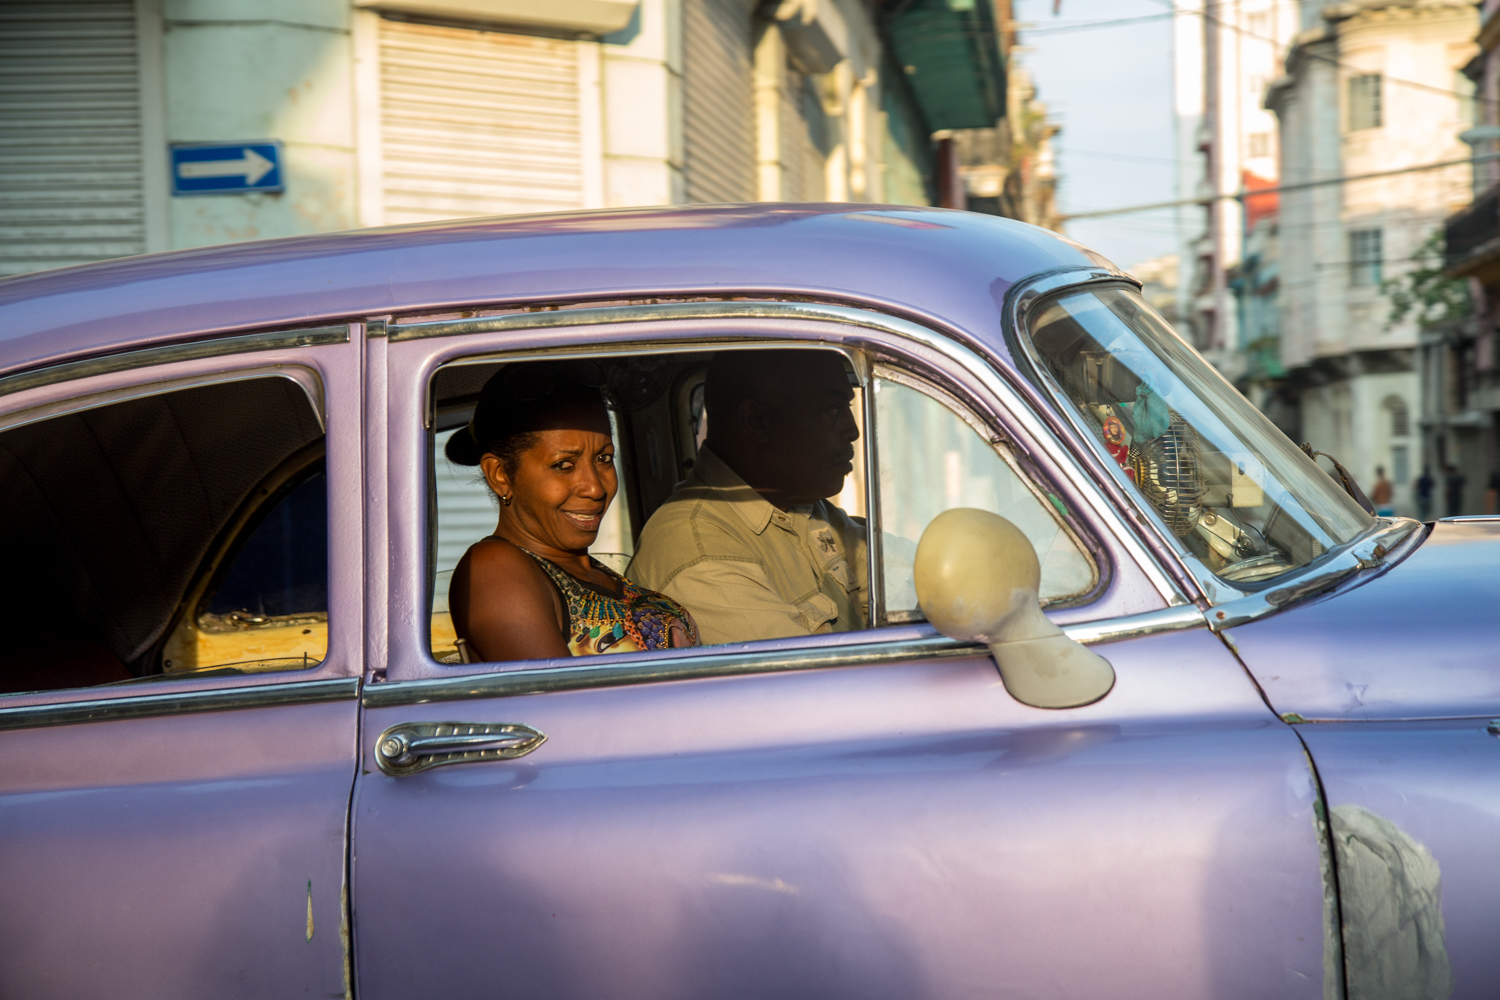 191_20160427-36333-5DM3-Cuba-Havana.jpg